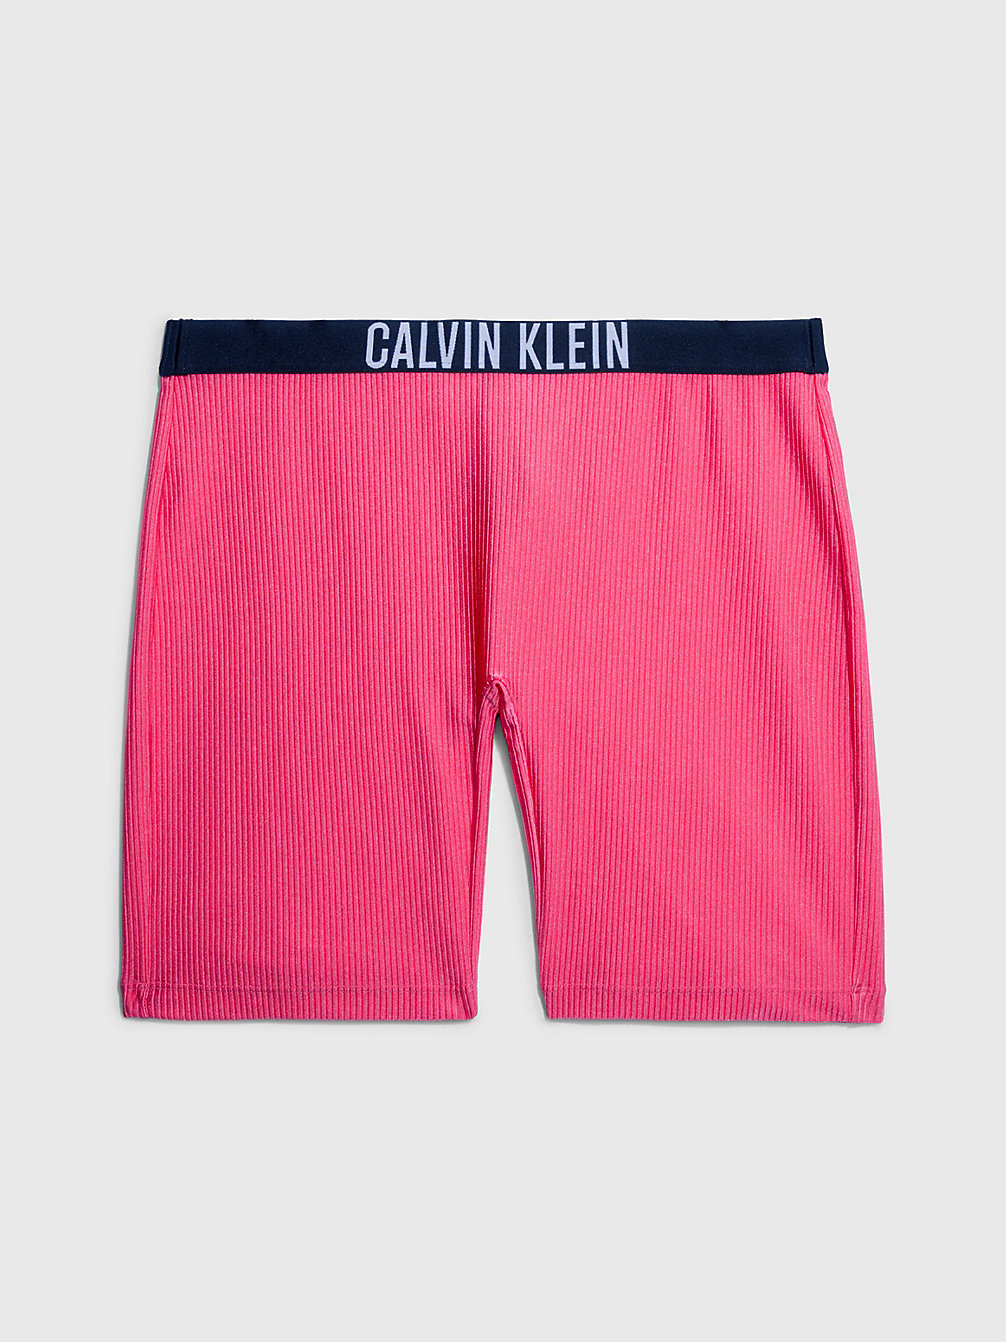 PINK FLASH Swim Shorts - Intense Power undefined women Calvin Klein